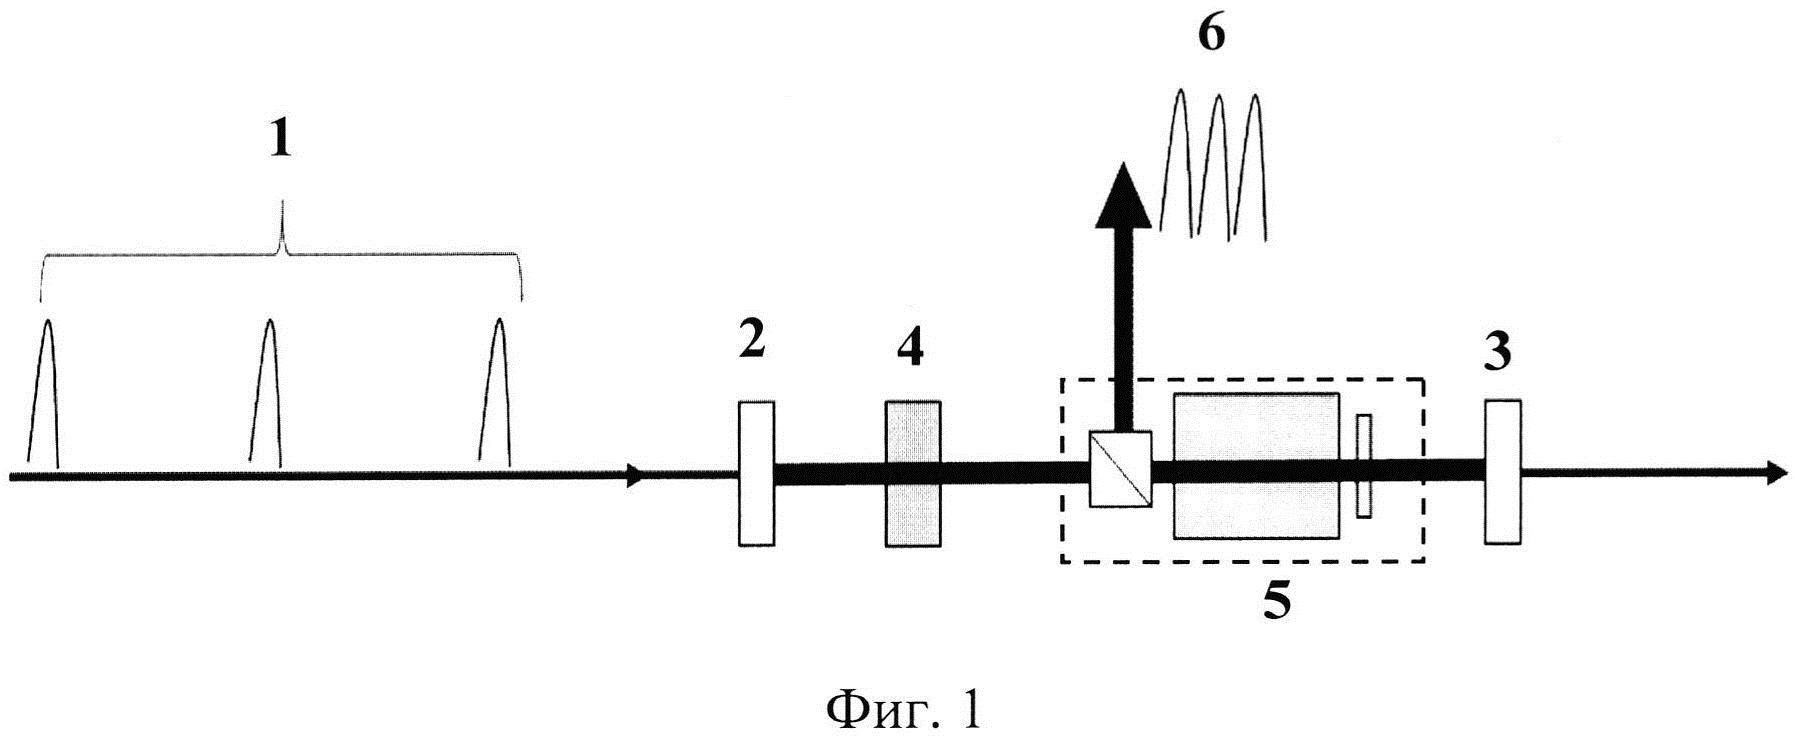 Способ увеличения частоты следования ультракоротких высокомощных лазерных импульсов в ограниченной последовательности